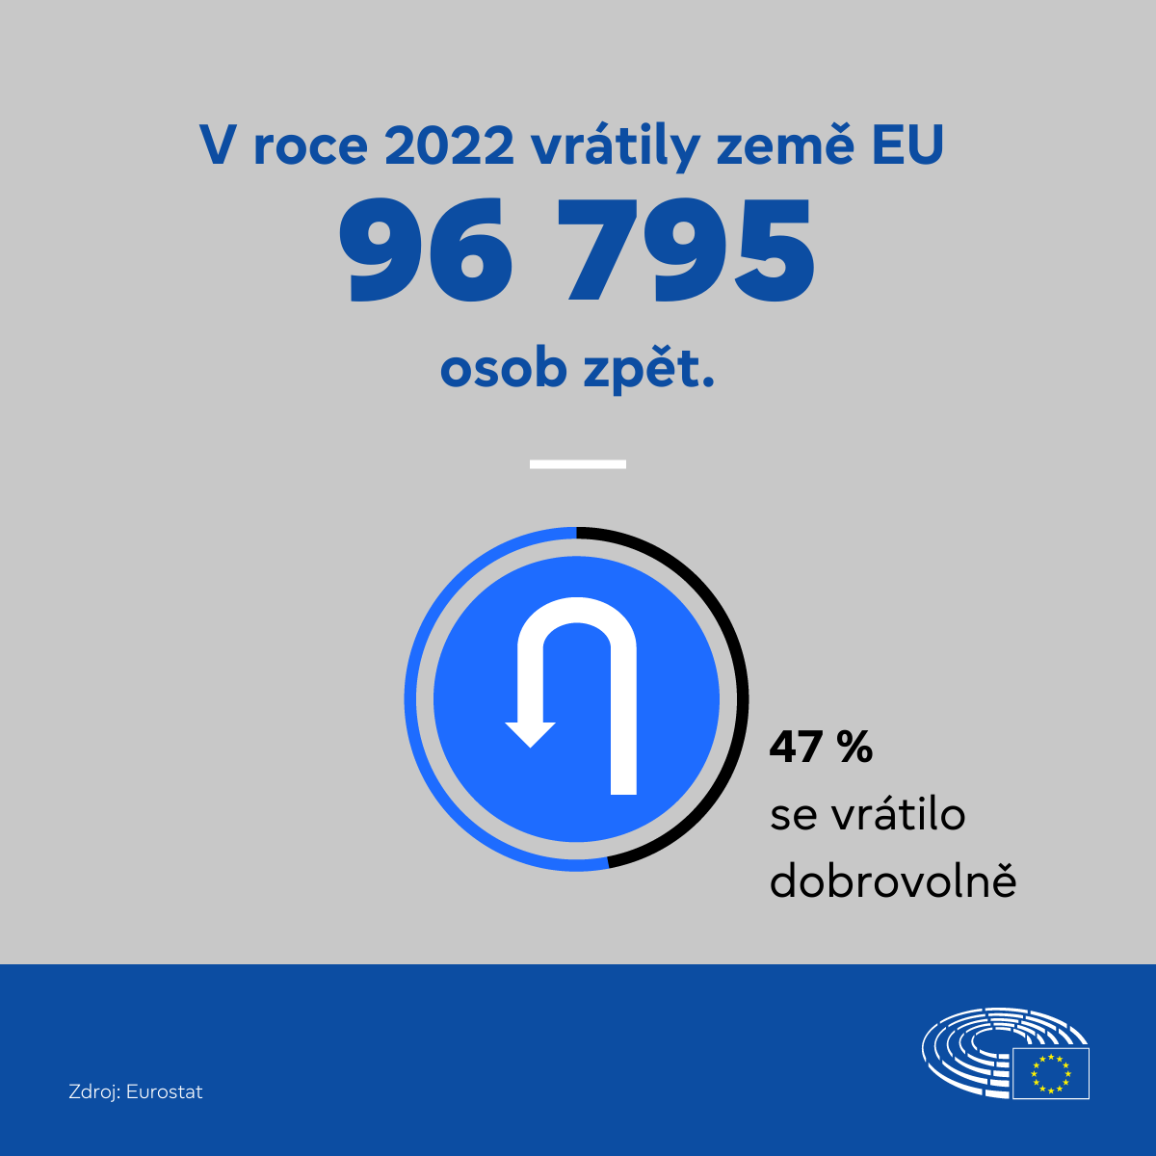 Zem EU v roce 2022 vrtily zpt 96 795 osob, z nich 47 % odelo dobrovoln.